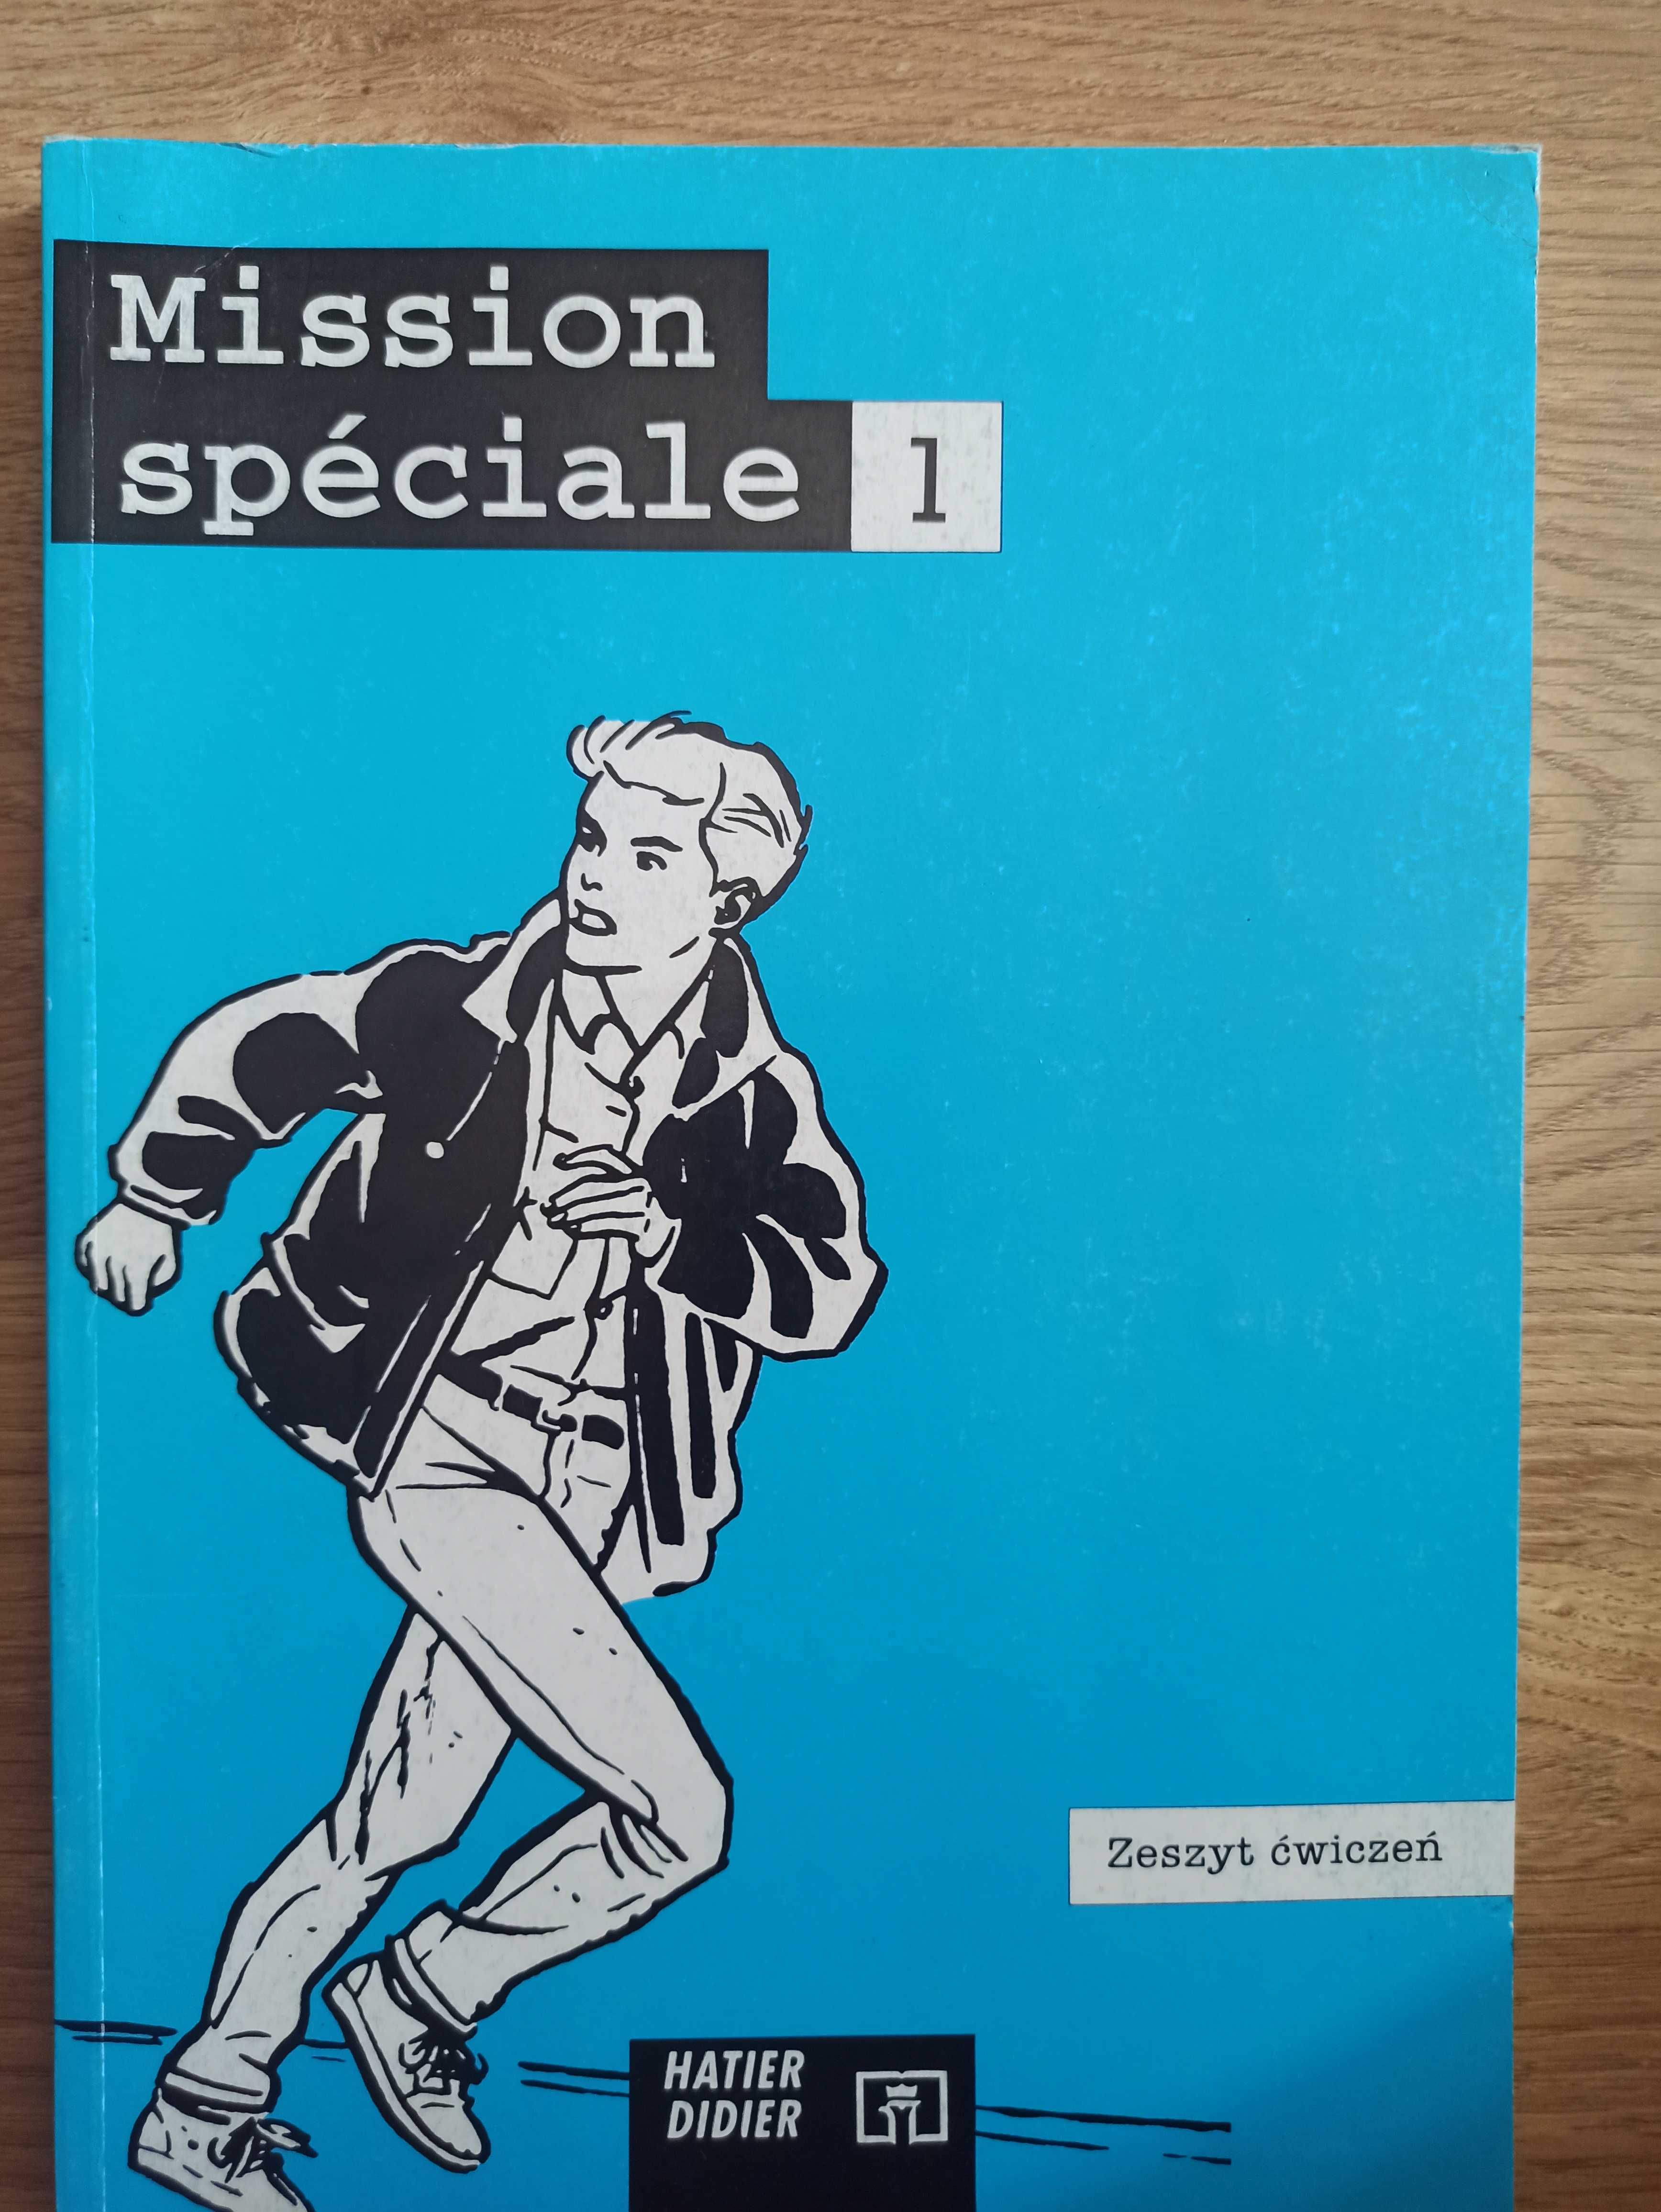 Mission speciale - 1 - zeszyt ćwiczeń, Hatier Didier